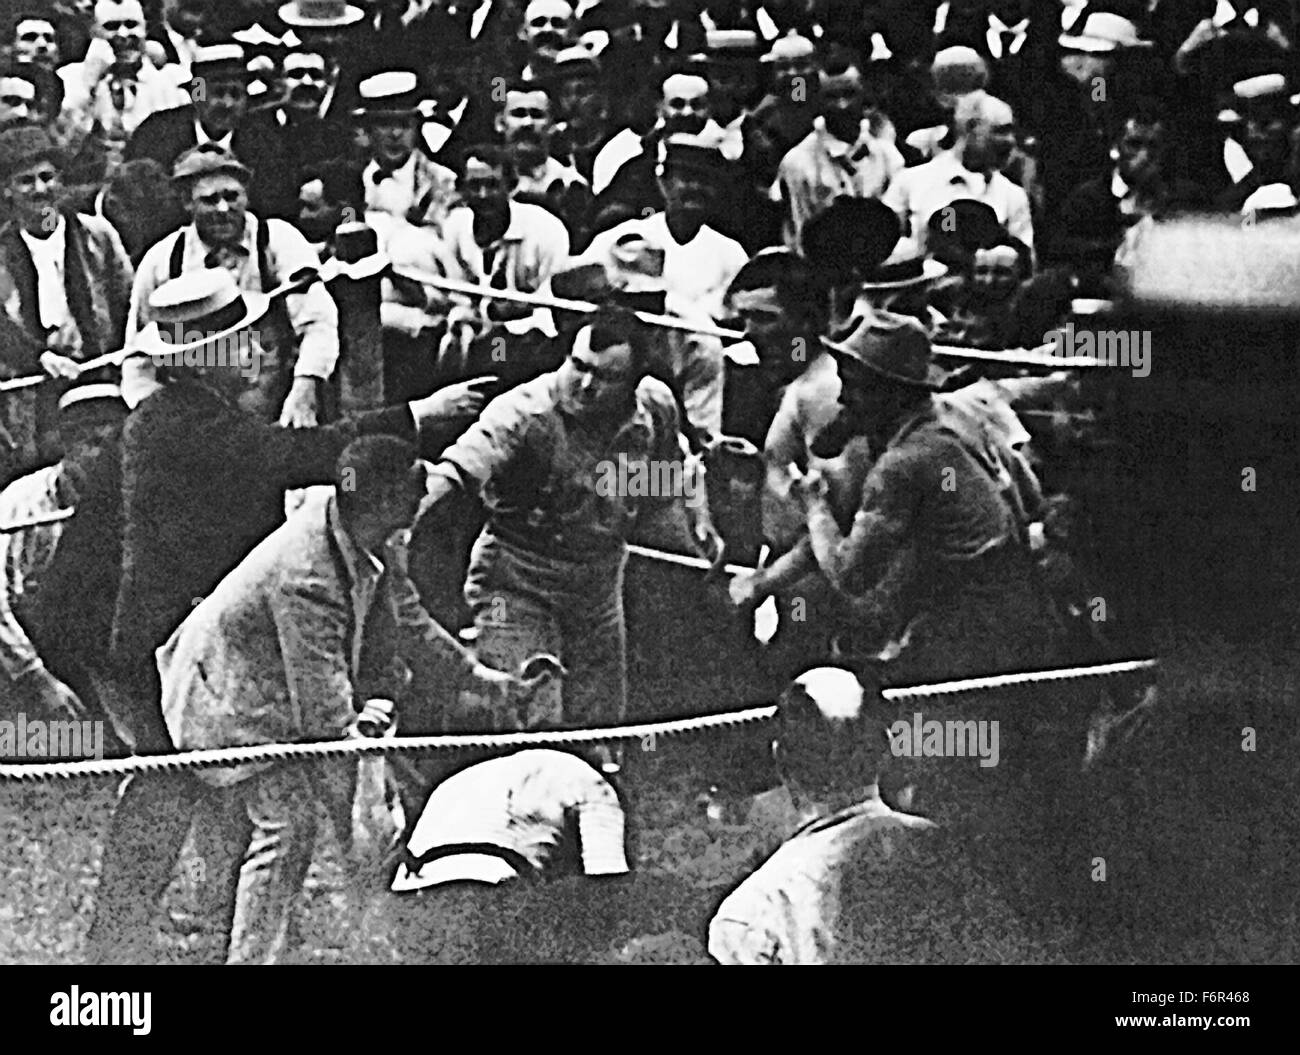 Vintage Foto von der berühmten bloßen Fäusten WM-Kampf zwischen John L Sullivan (1858-1918) und Jake Kilrain (1859-1937). Der Kampf fand am 8. Juli 1889 in Richburg, Mississippi, vor einem geschätzten 3000 Zuschauern, die von den Behörden am Ort gespeichert geheim versammelt hatten. Sullivan, den Spitznamen "The Boston Strong Boy", ging als Sieger hervor, wenn der Wettbewerb von Kilrains Sekunden nach 75 Runden und zwei Stunden und 16 Minuten des Kampfes gestoppt wurde. Stockfoto